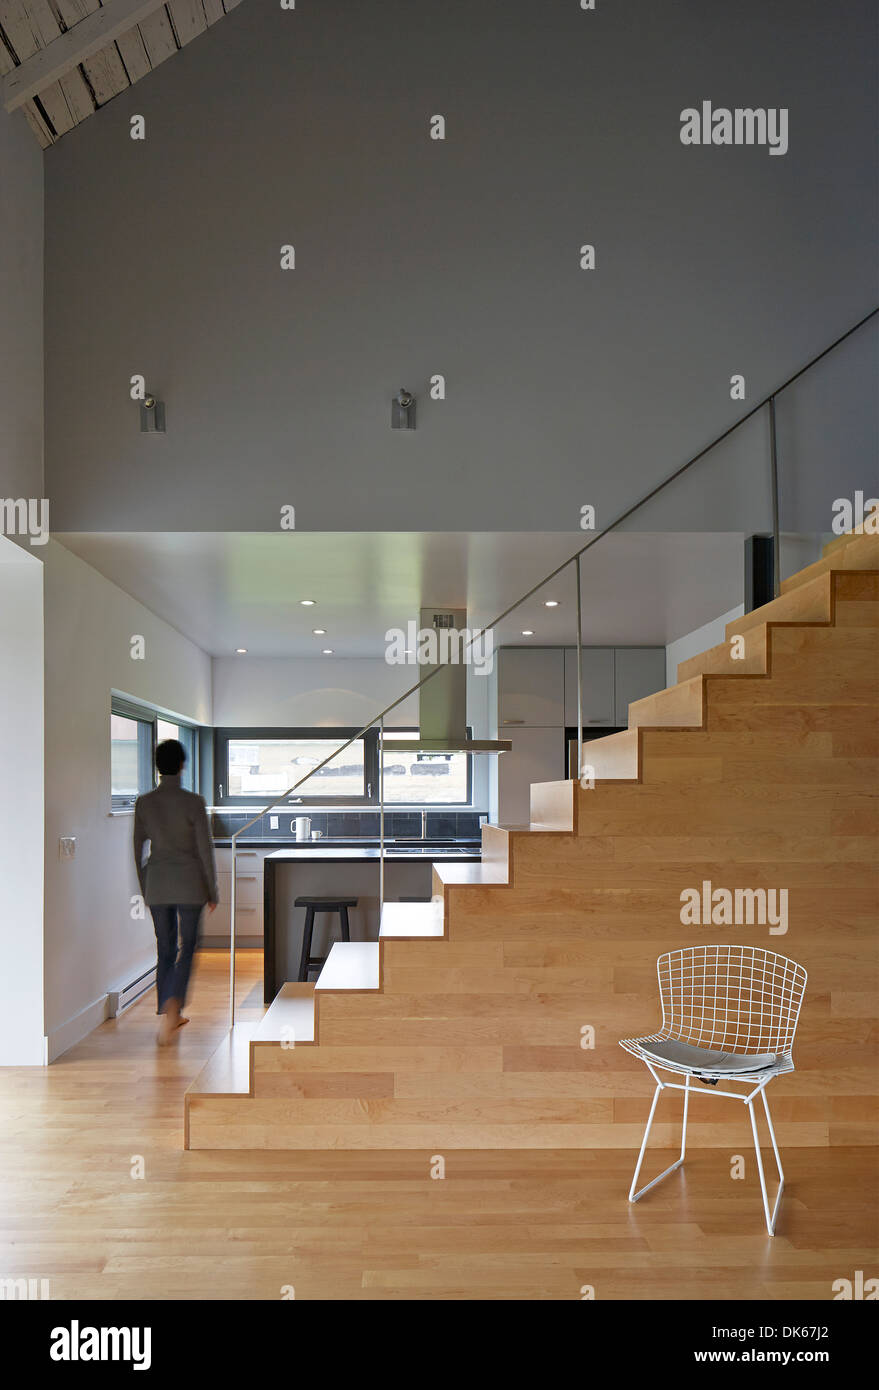 Maison Compton, Compton, Canada. Architecte : Atelier in situ, 2013. Escalier et cuisine. Banque D'Images